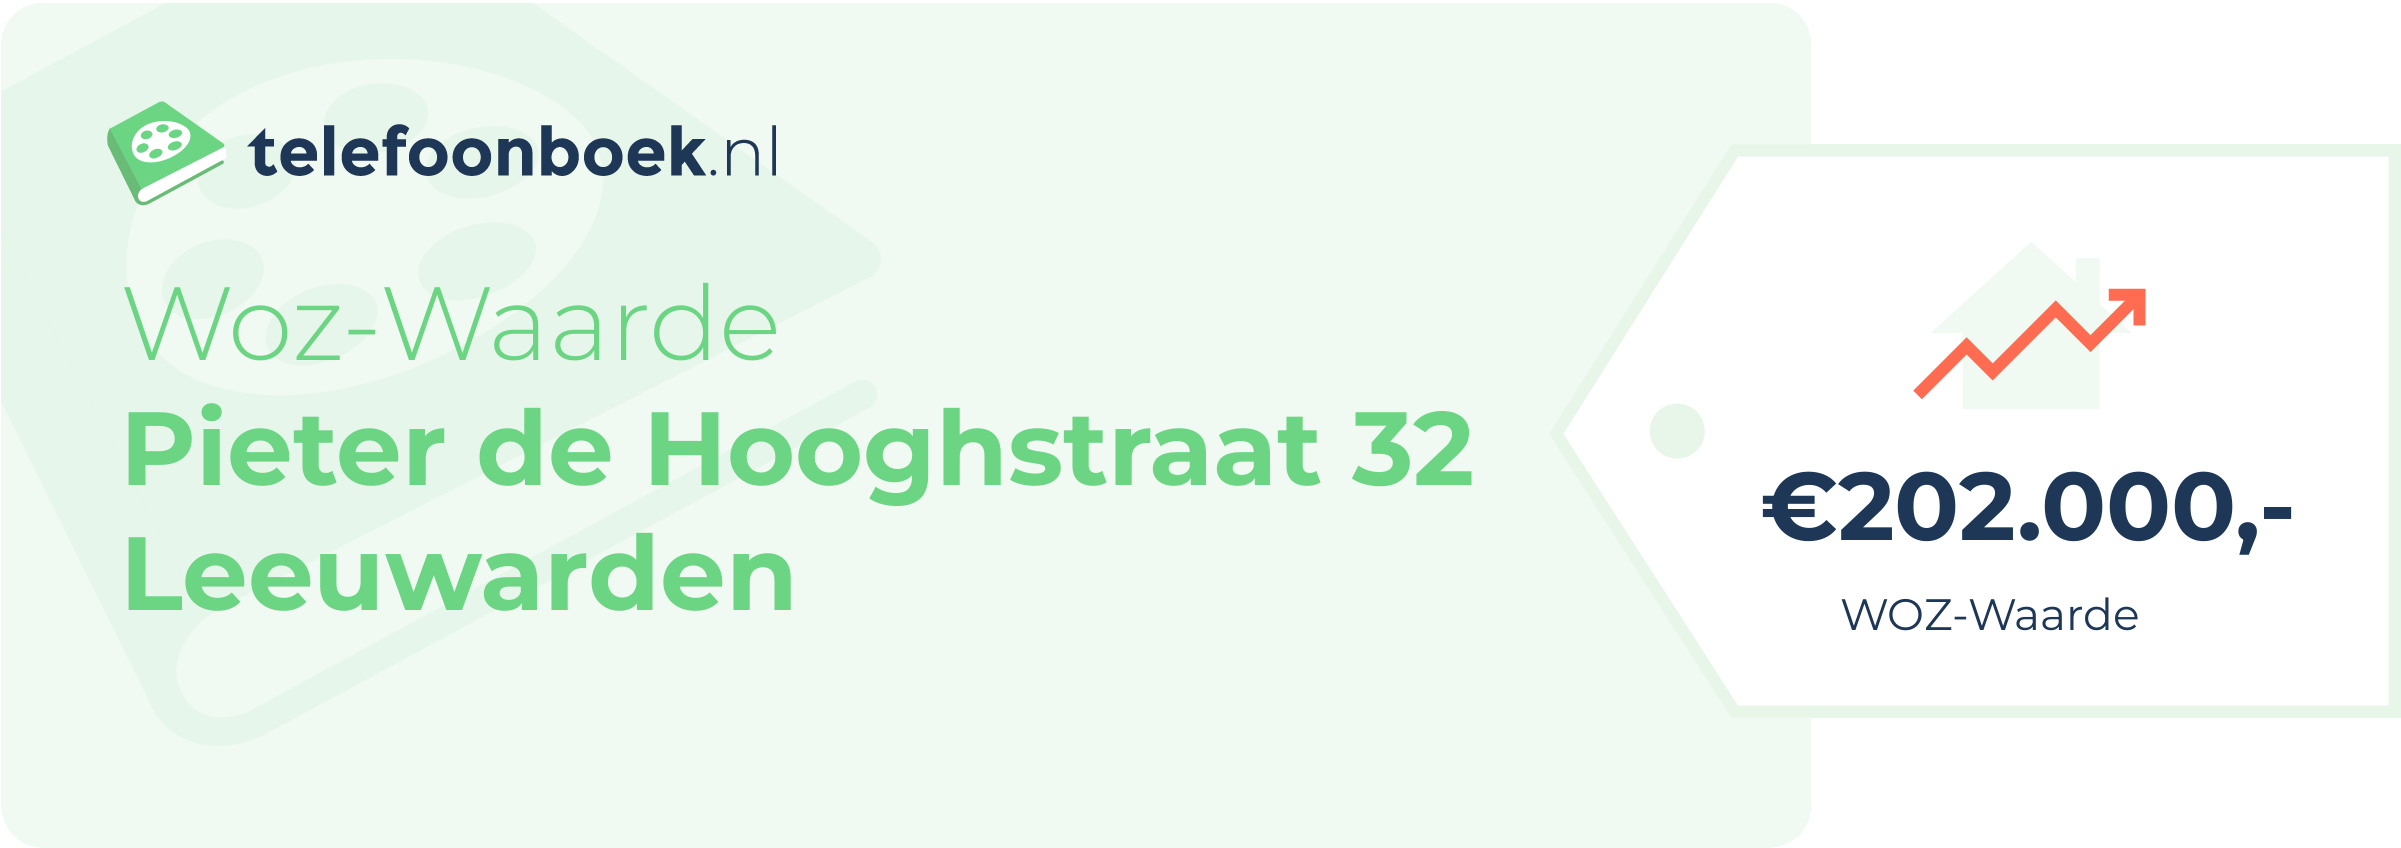 WOZ-waarde Pieter De Hooghstraat 32 Leeuwarden